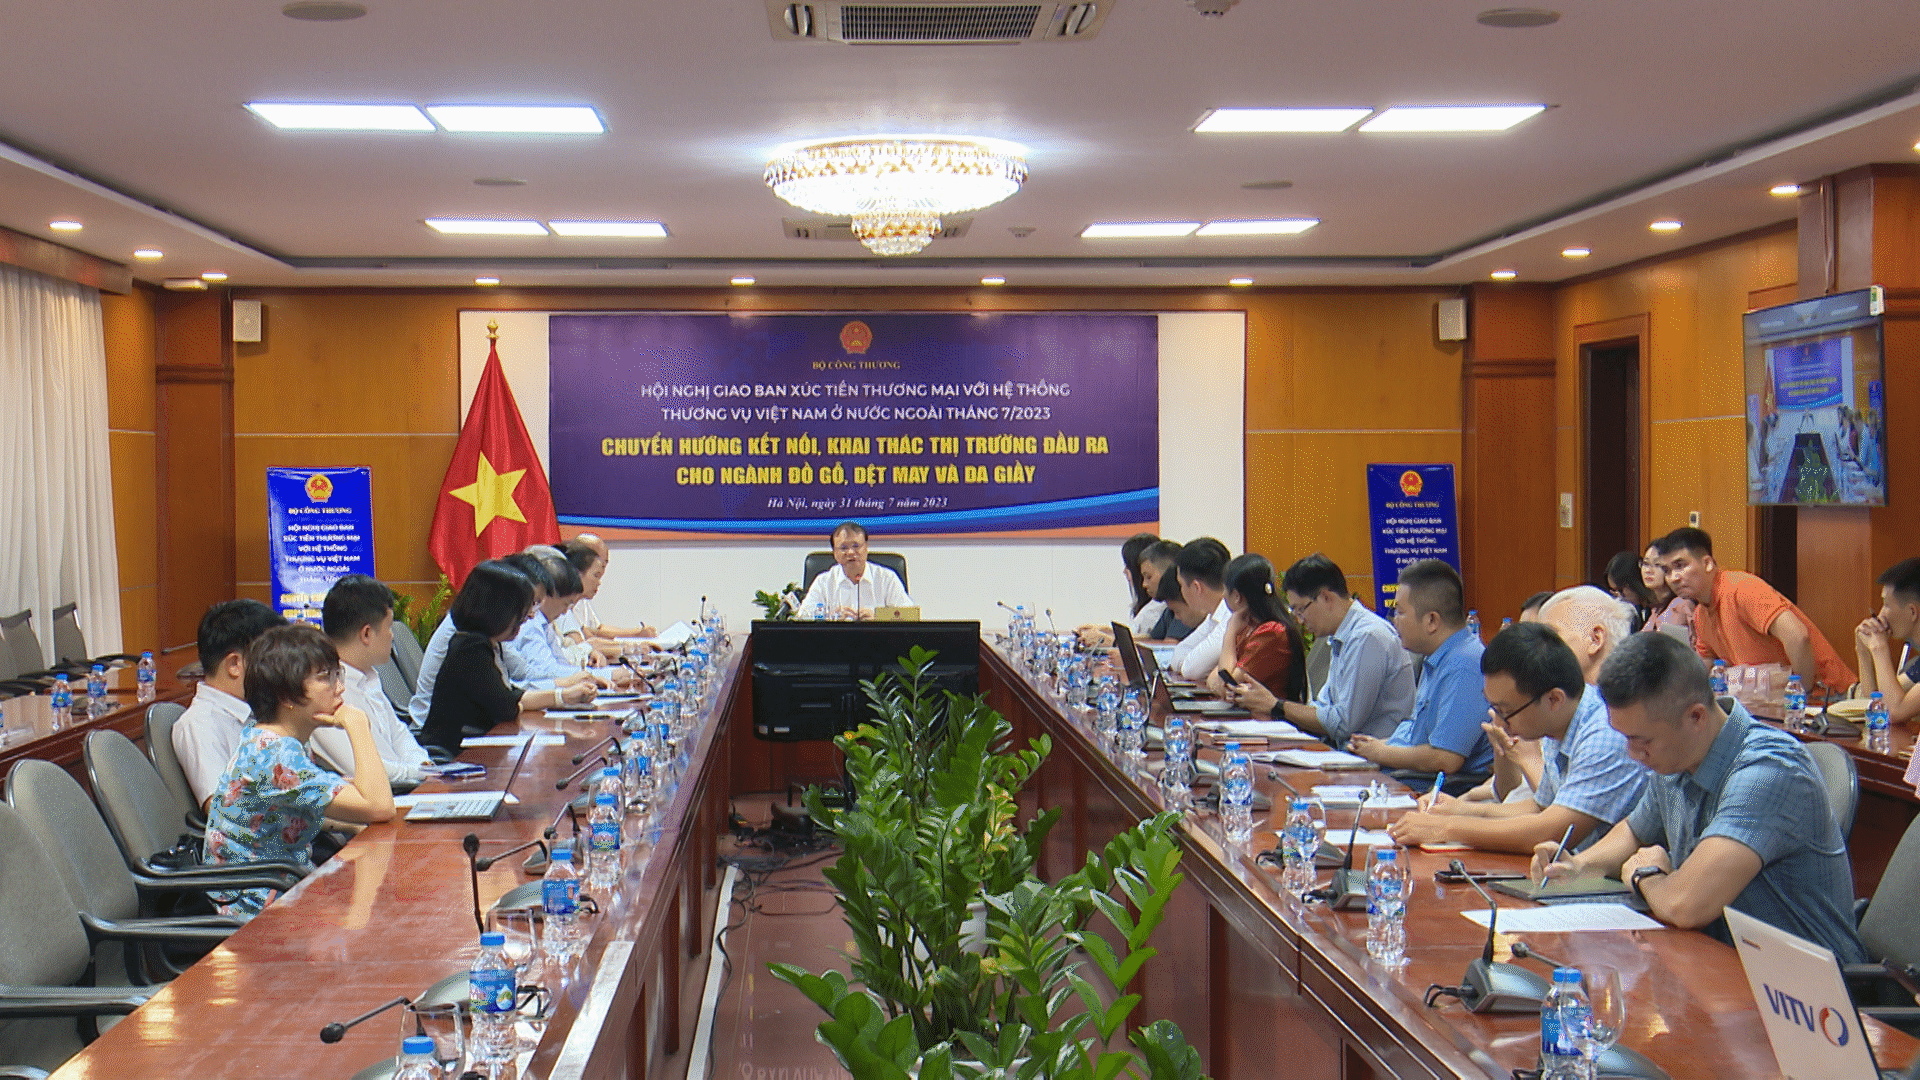 Toàn cảnh Hội nghị giao ban xúc tiến thương mại với hệ thống Thương vụ Việt Nam ở nước ngoài tháng 7/2023